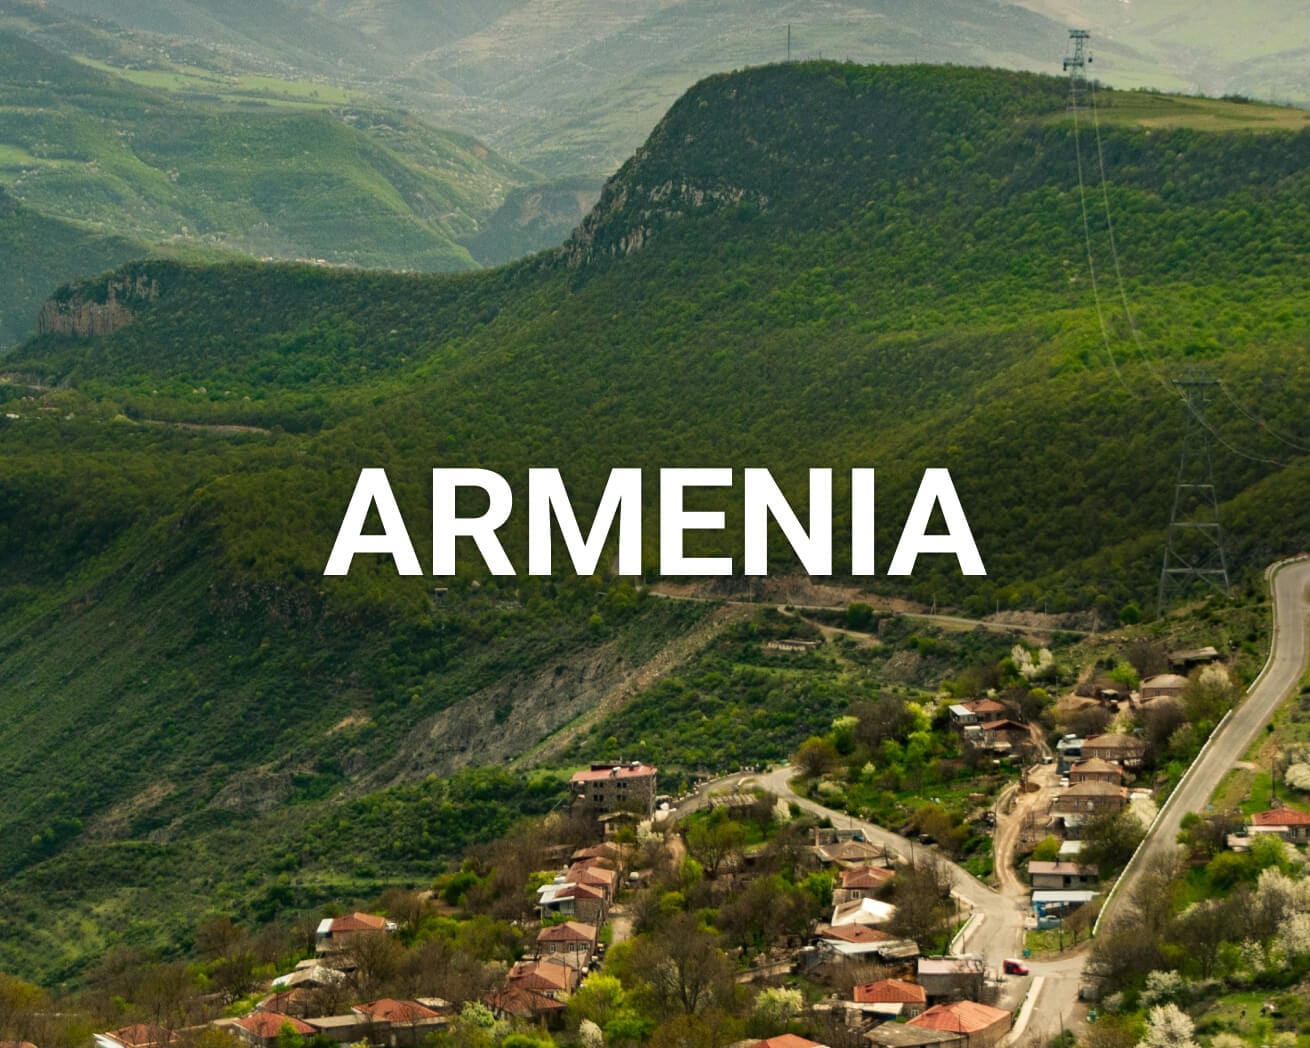 Armenia main image